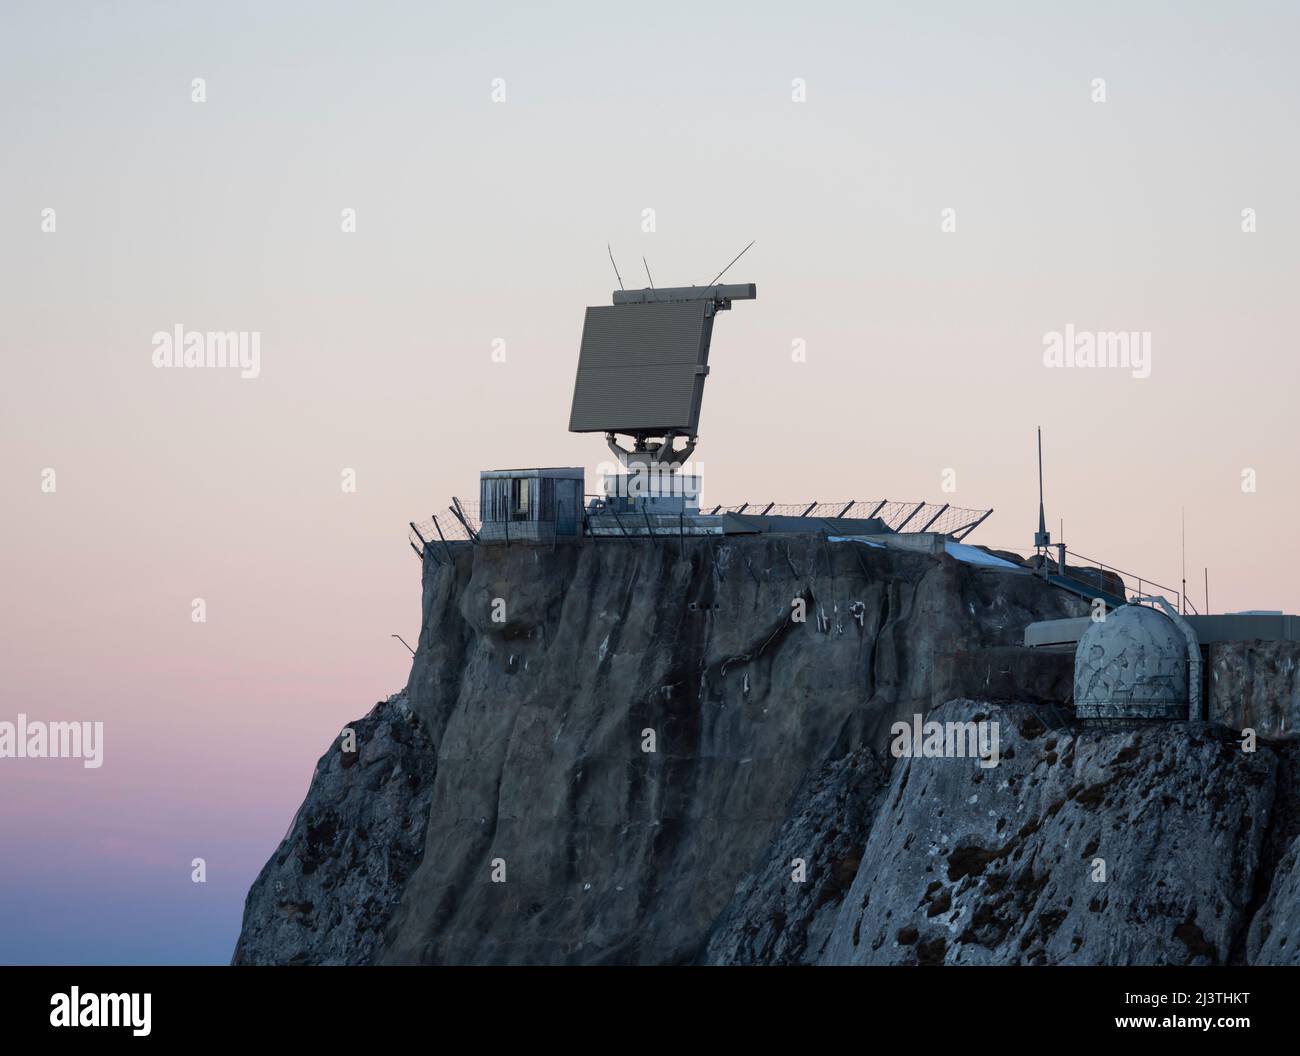 Antenna radar militare per ricognizione aerea sulla sommità del monte Pilatus (Pilatus Kulm, alt. 2132m) nelle alpi svizzere. Foto Stock